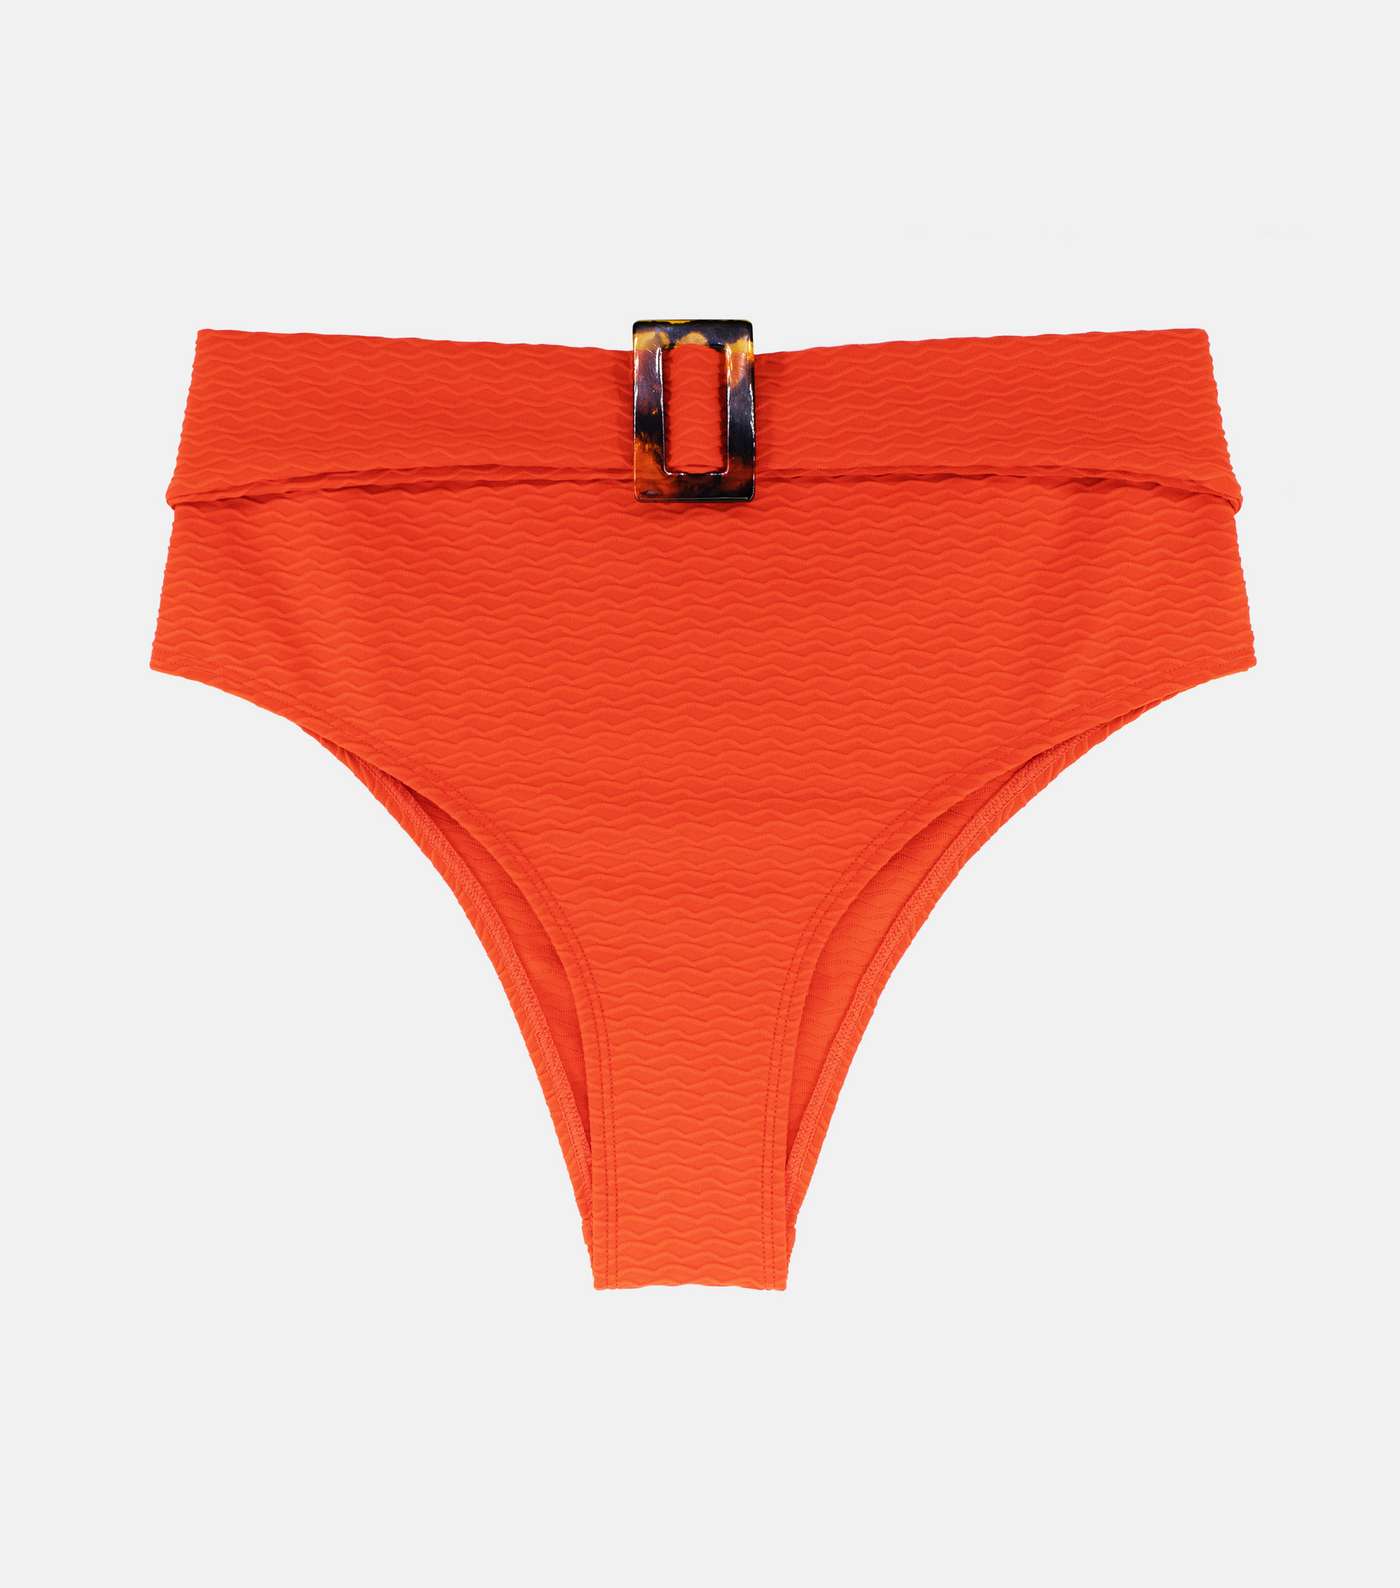 Dorina Bright Orange High Waist High Leg Buckle Bikini Bottoms Image 5